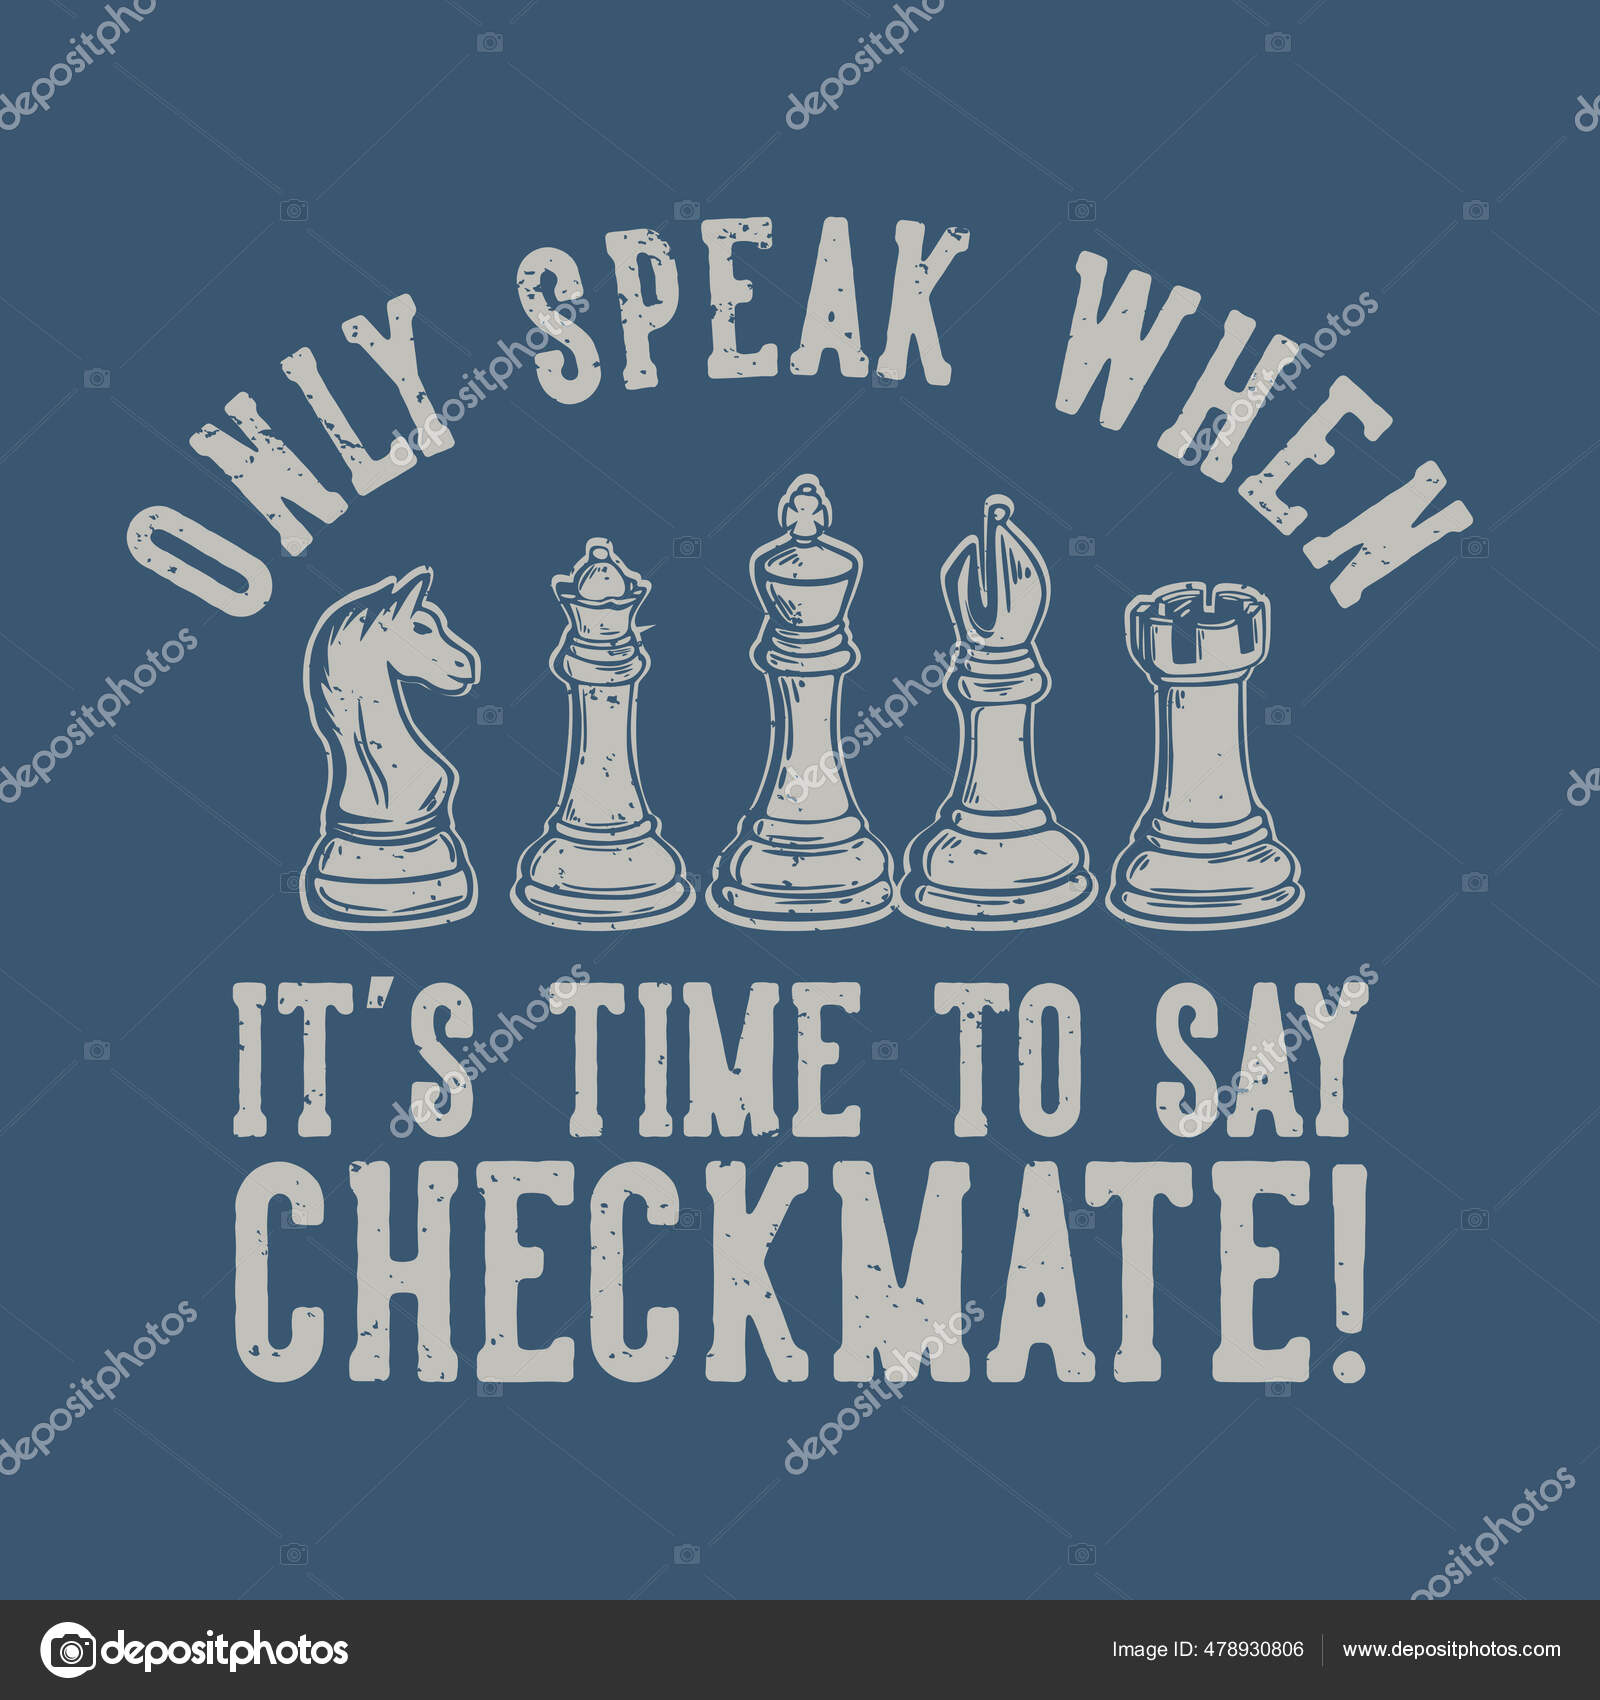 Ilustração vetorial de peça de xadrez para camiseta